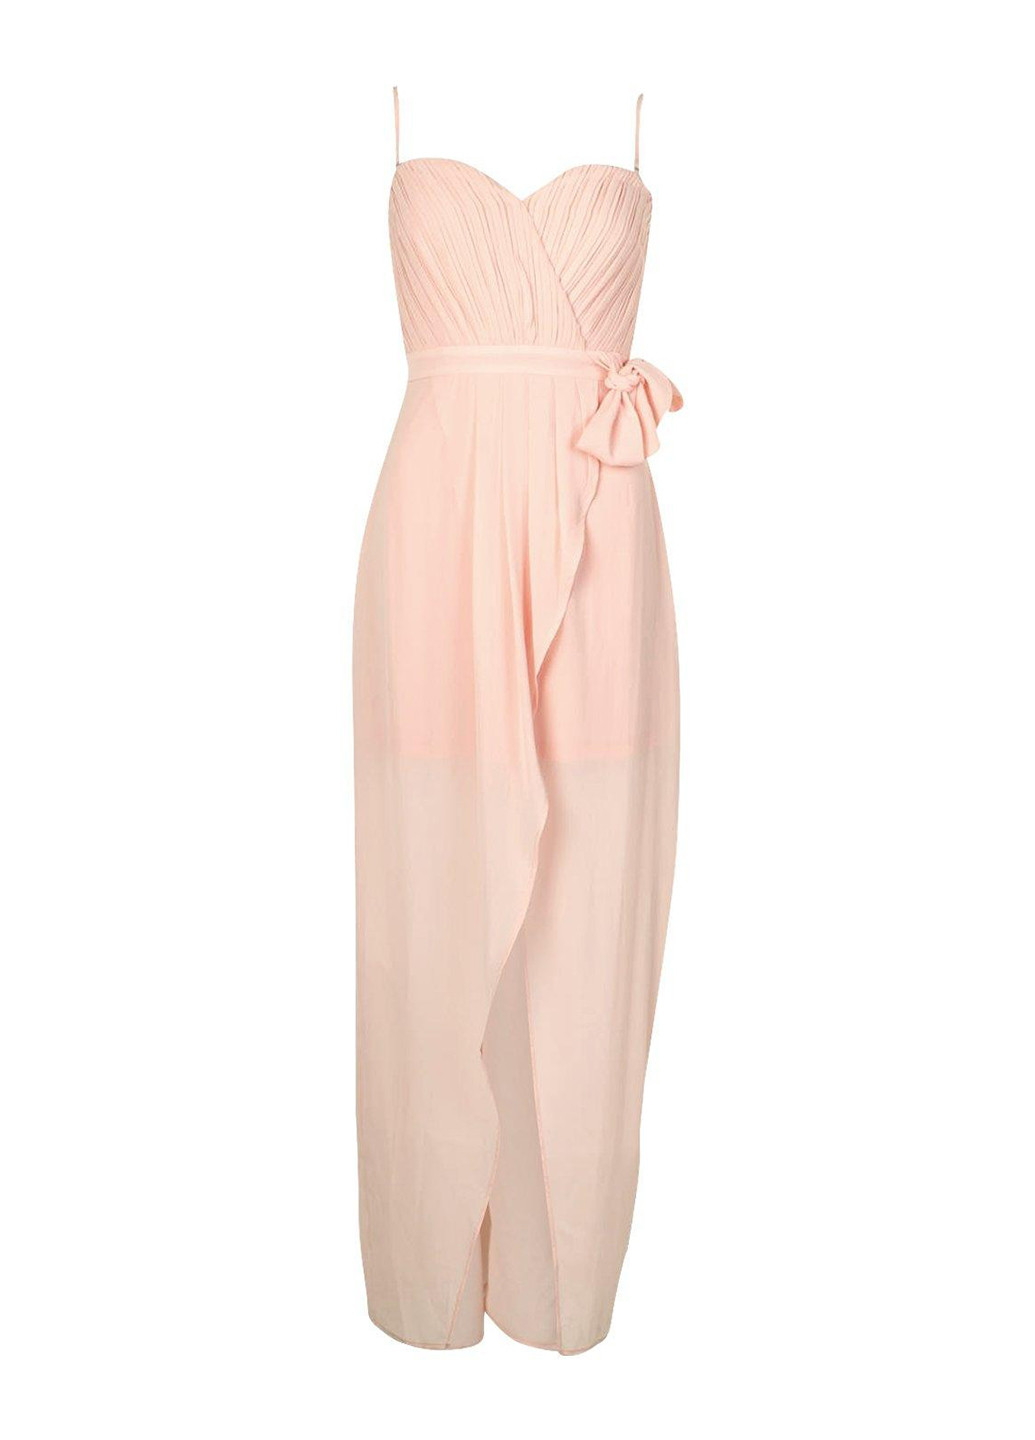 Светло-розовое вечернее платье на запах, в греческом стиле Boohoo однотонное